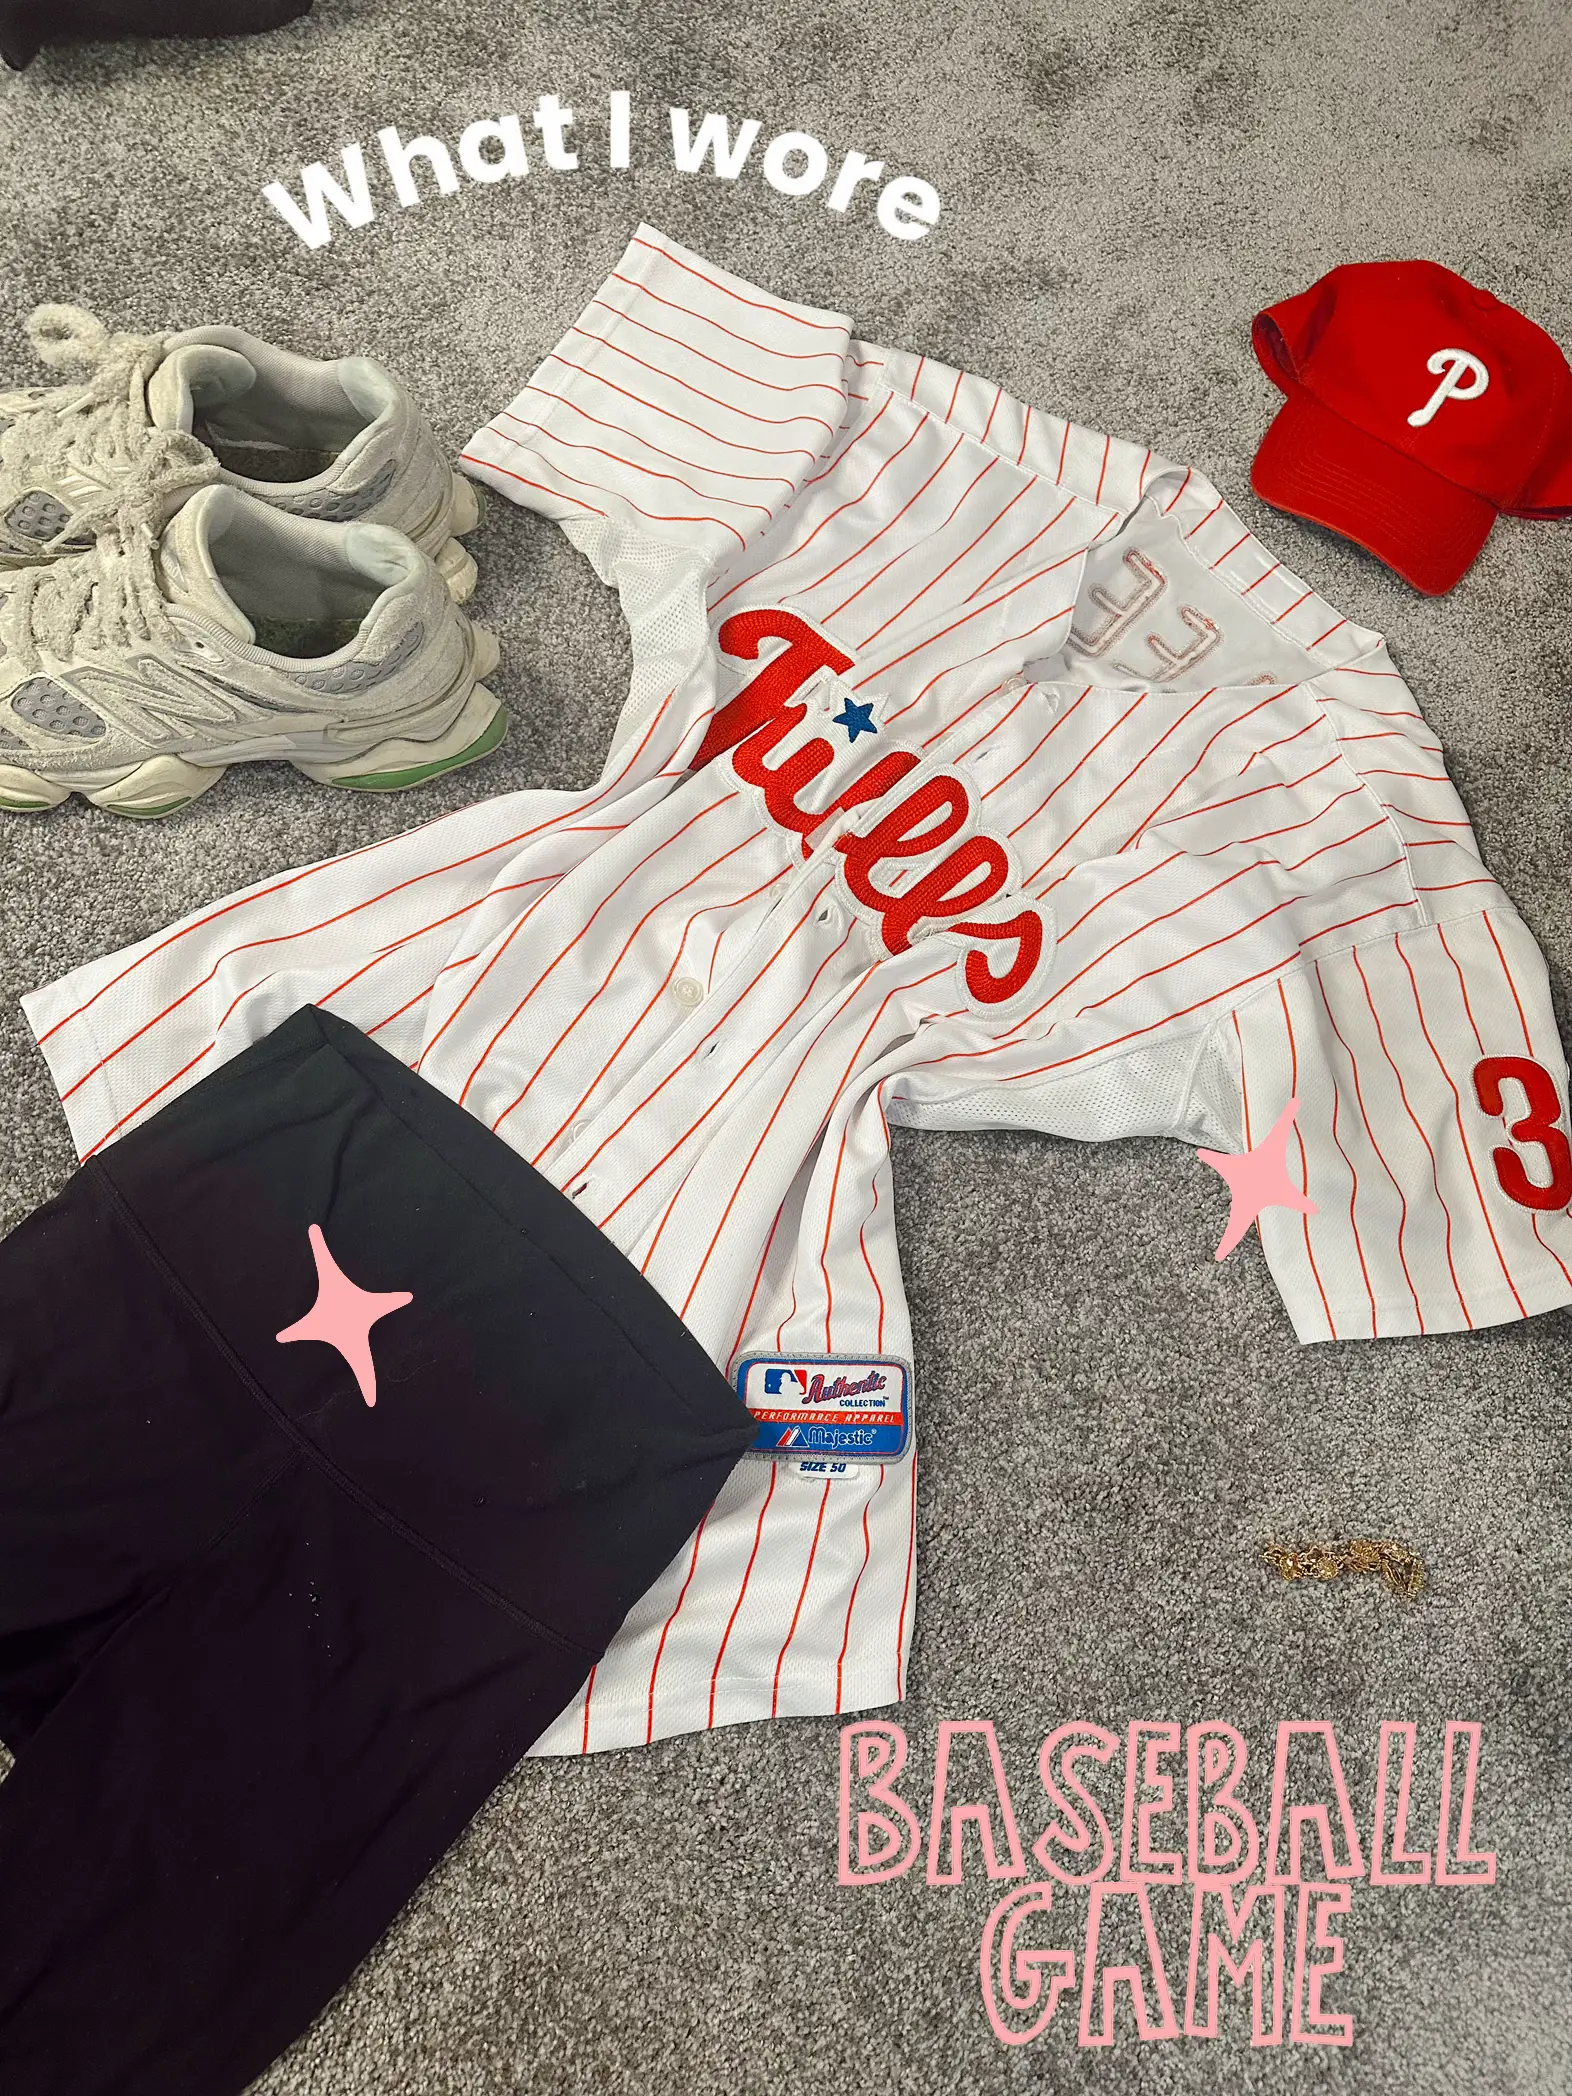 Styling A Baseball Jersey #baseballgameoutfit #baseballoutfit